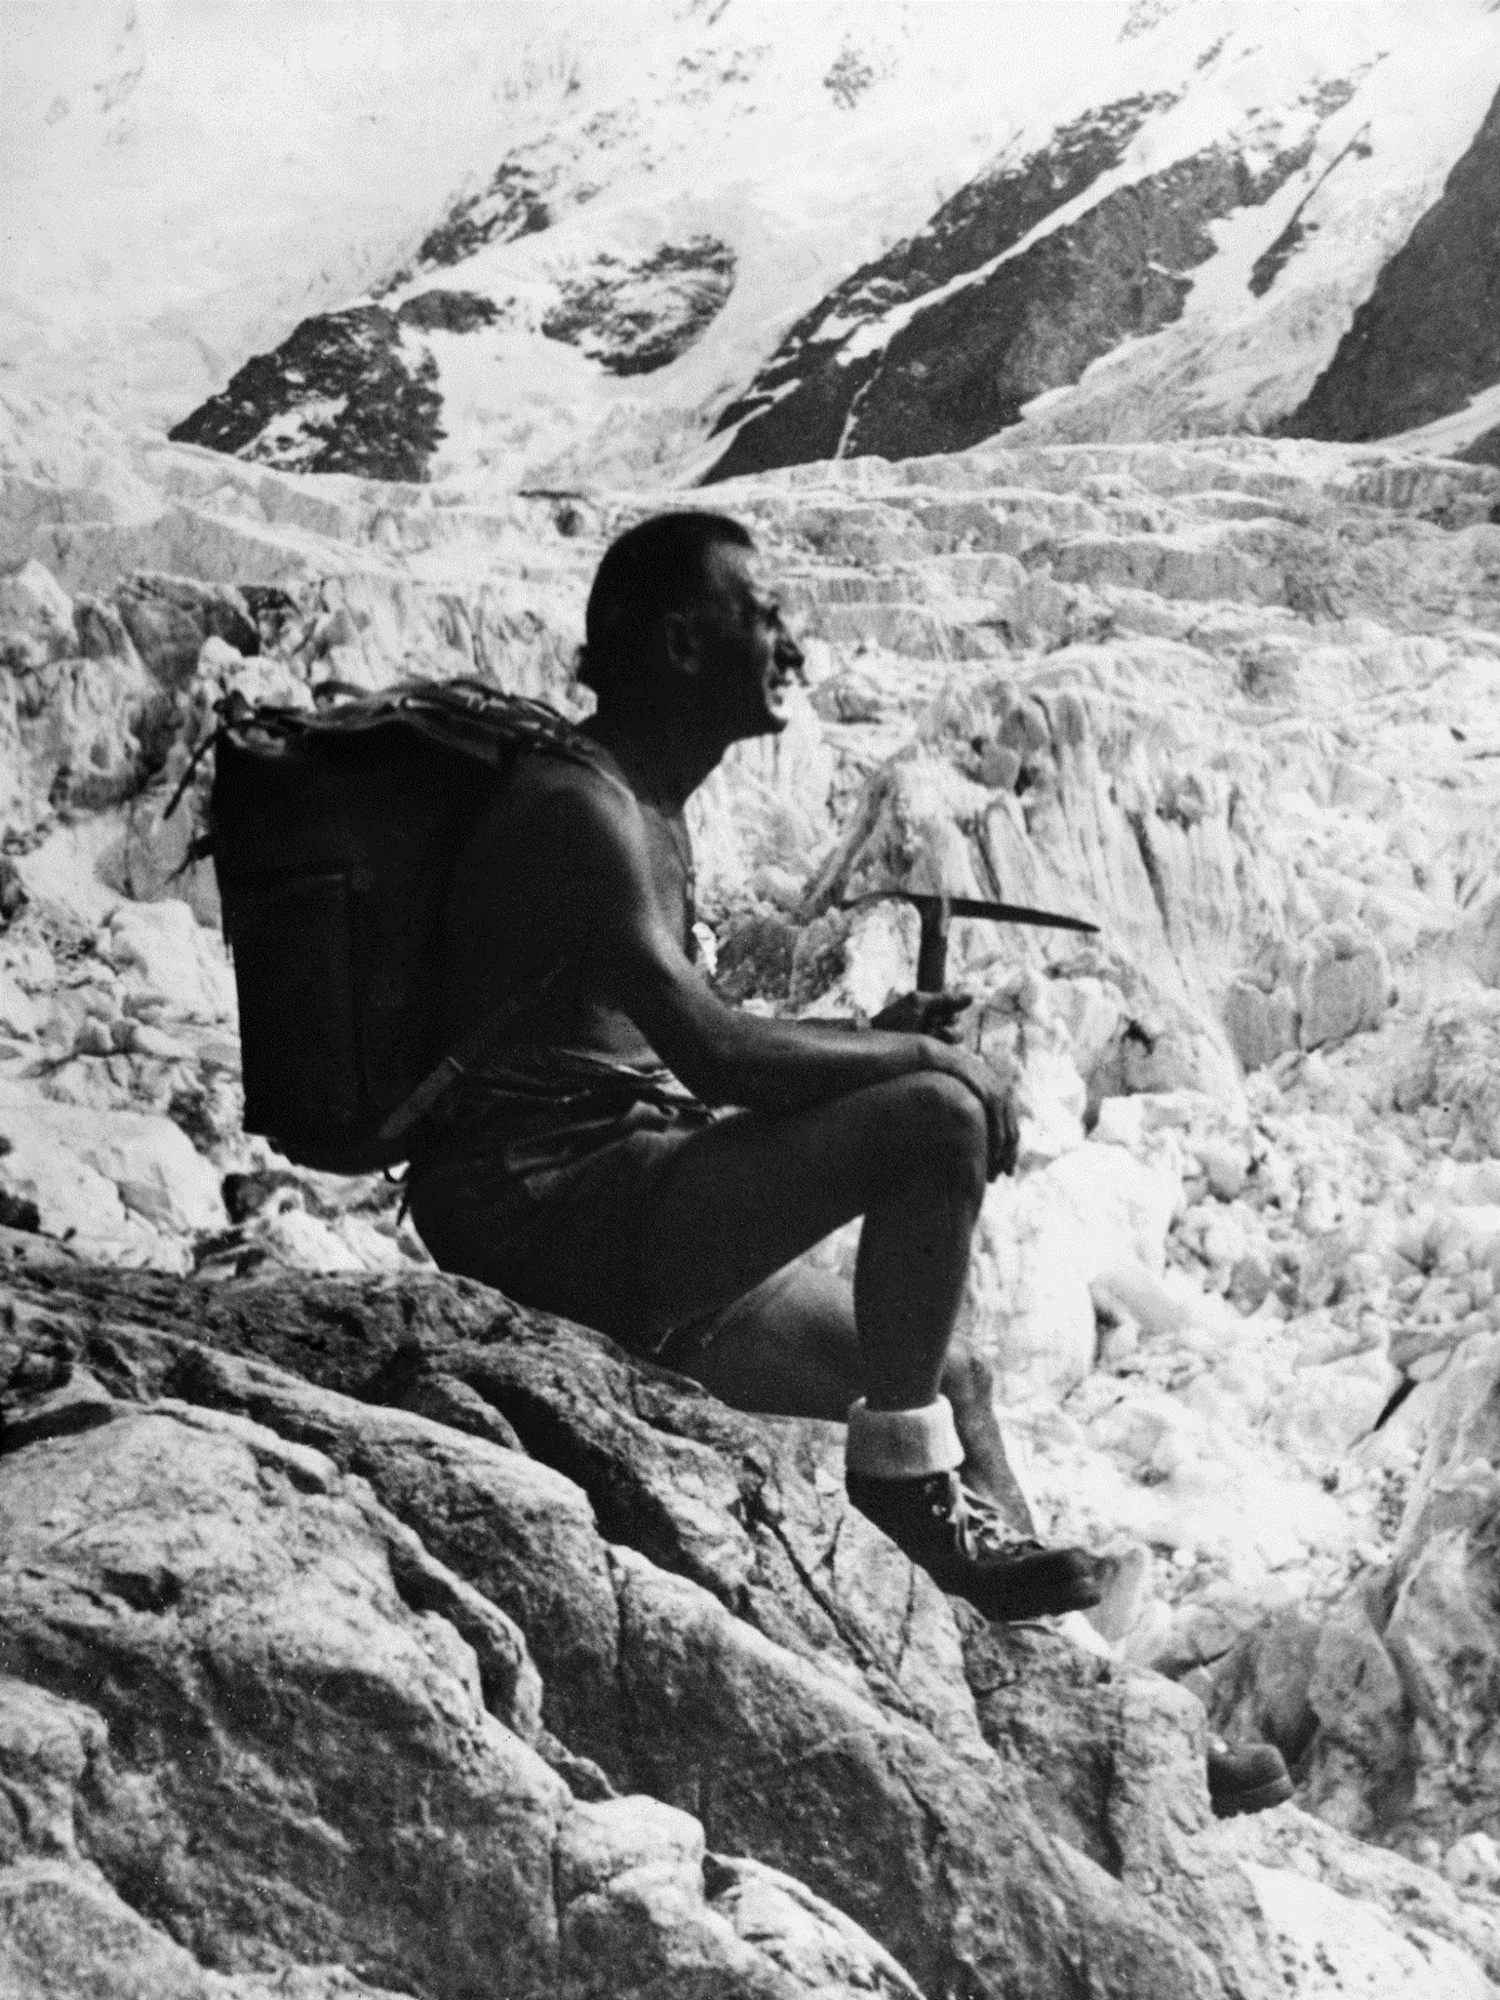 創業者のヴィターレ・ブラマーニ（Vitare Bramani）。登山家でもあった彼は、��自分が作ったソールを履いて雪山に登るなど、そのパフォーマンスの検証を自ら行っていた。彼の名前から社名でもありブランド名でもある「Vibram」となった